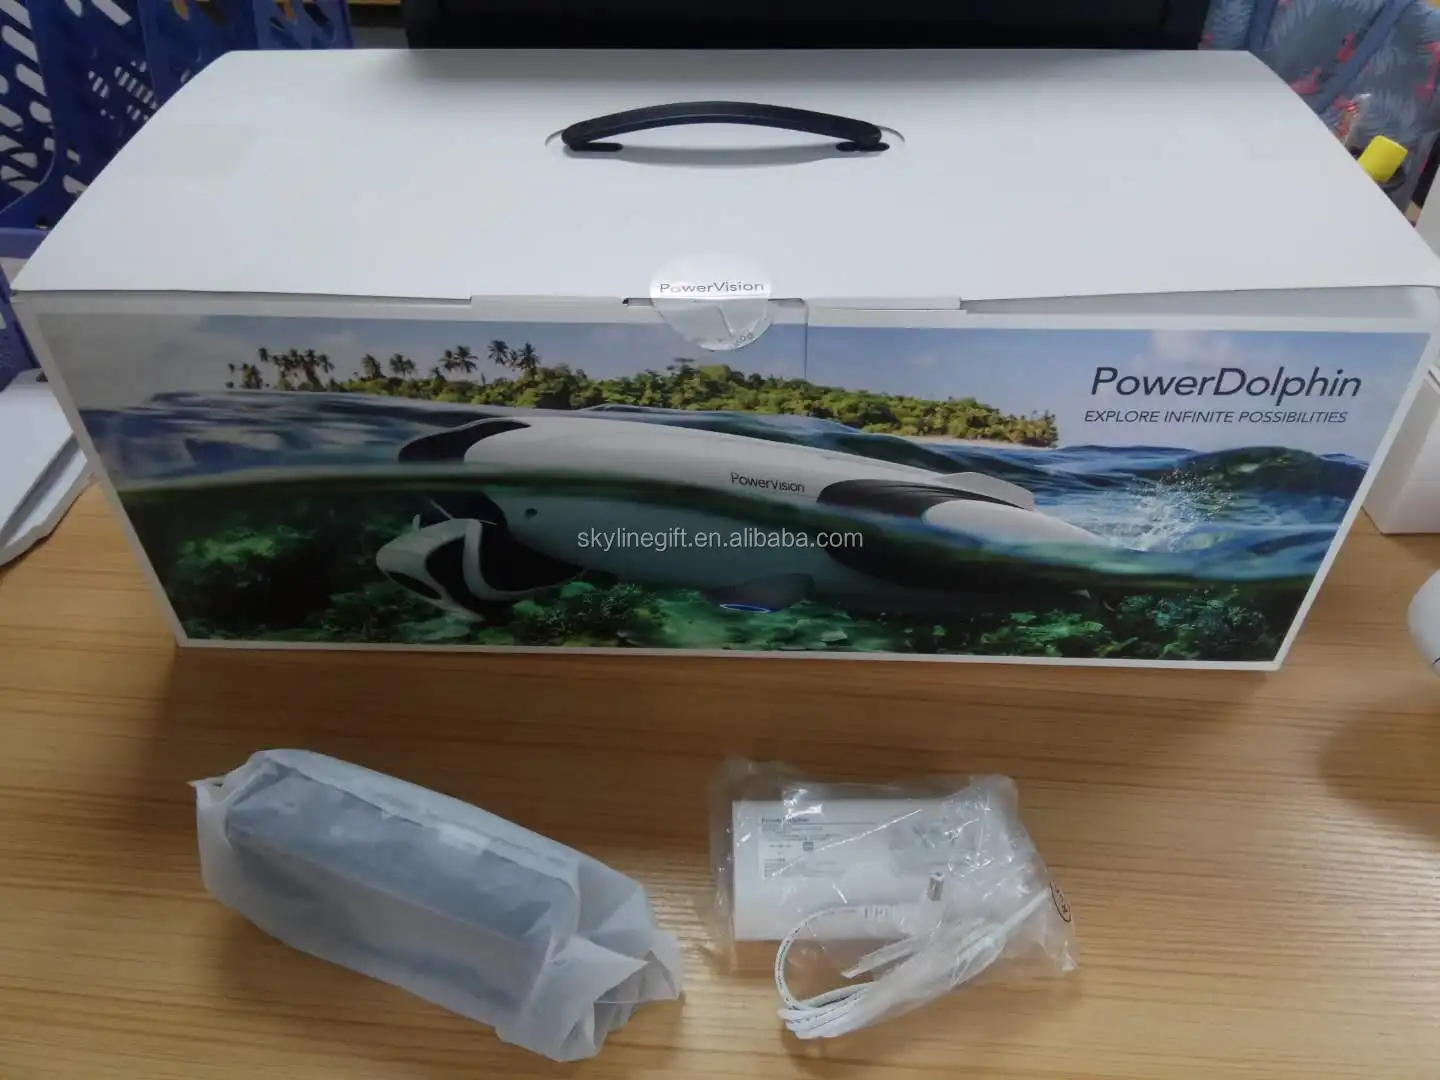 Source Powervision underwater Drone PowerDolphin Wizard Power